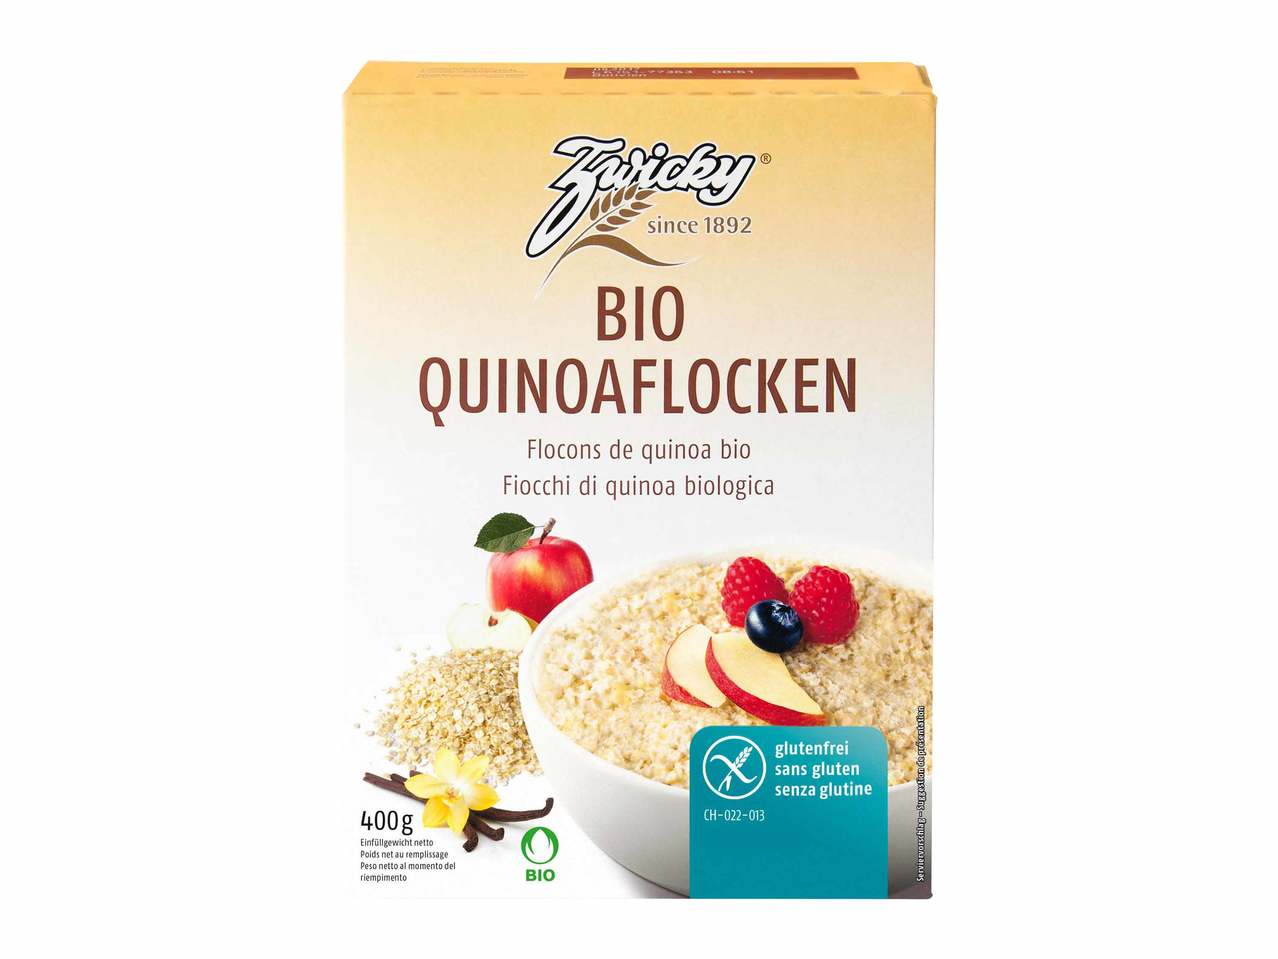 Flocons de quinoa bio Zwicky